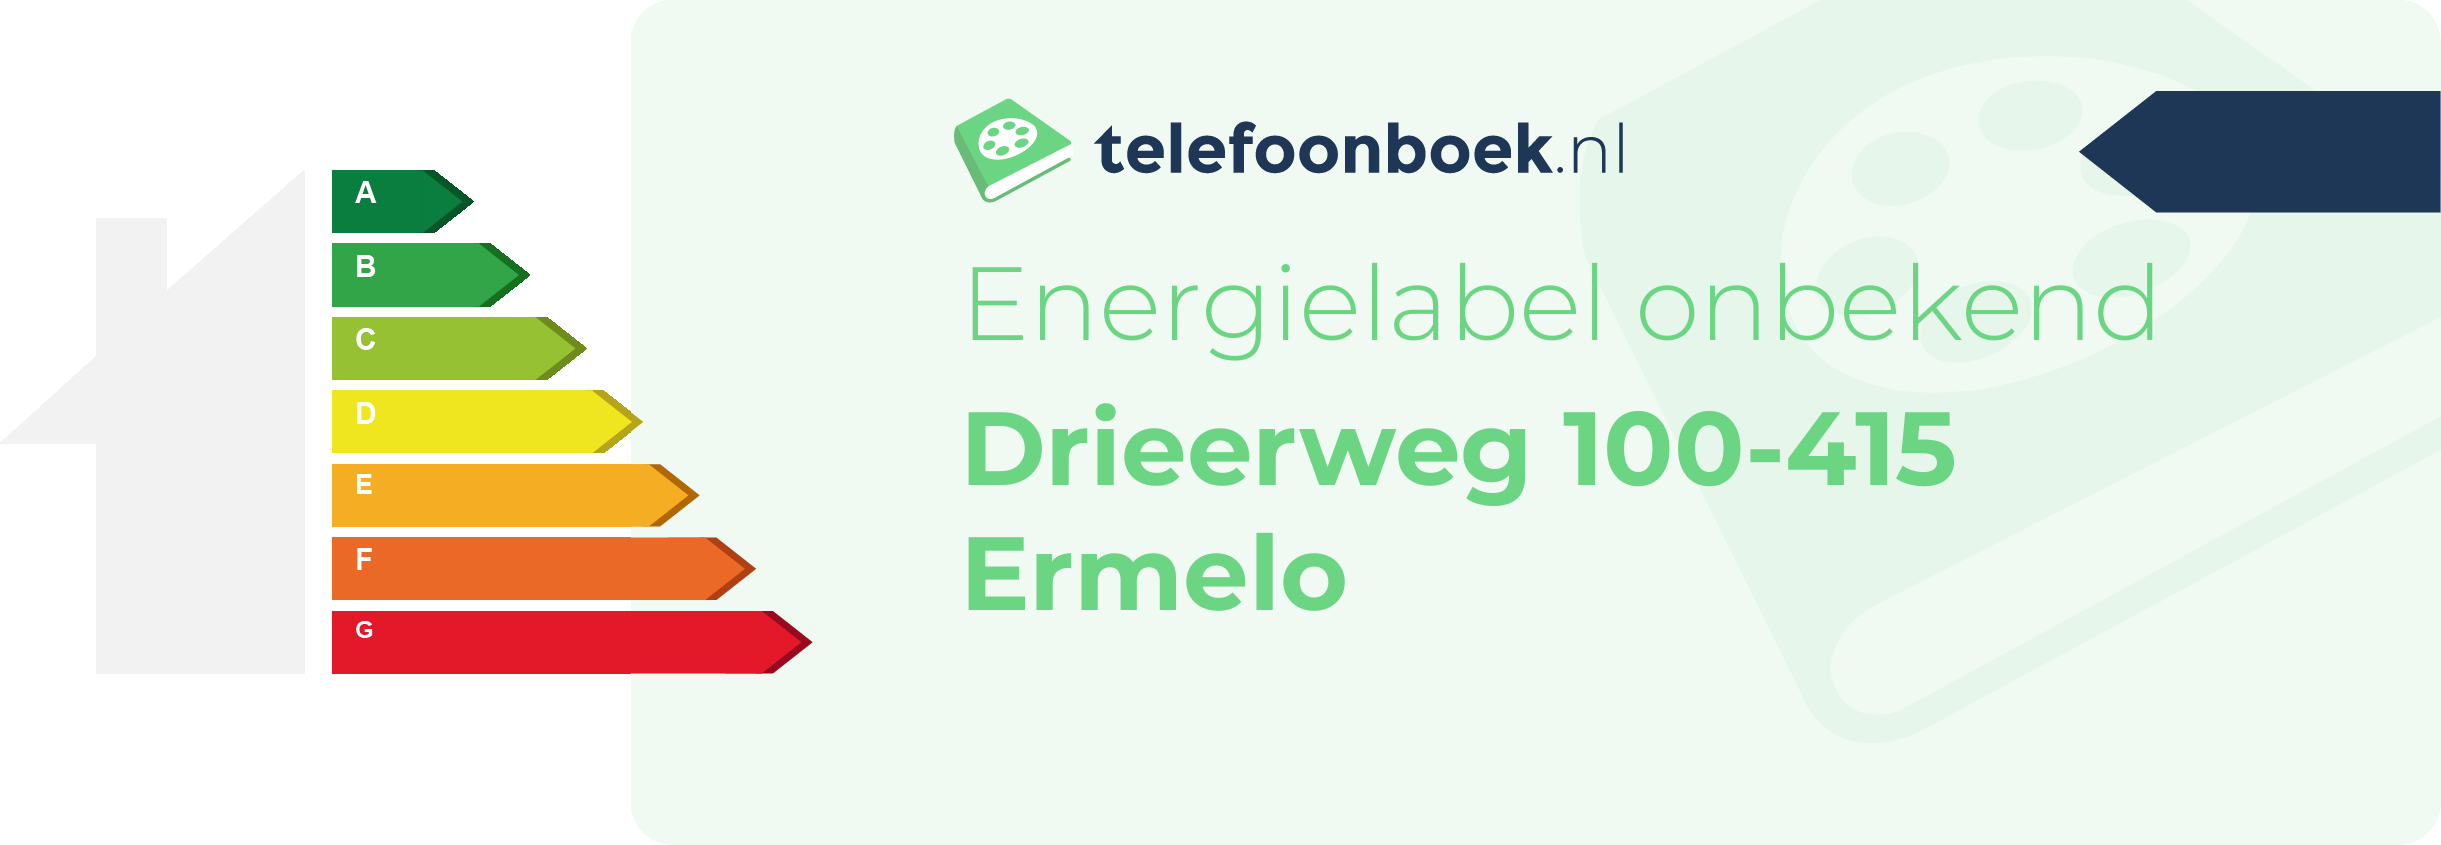 Energielabel Drieerweg 100-415 Ermelo